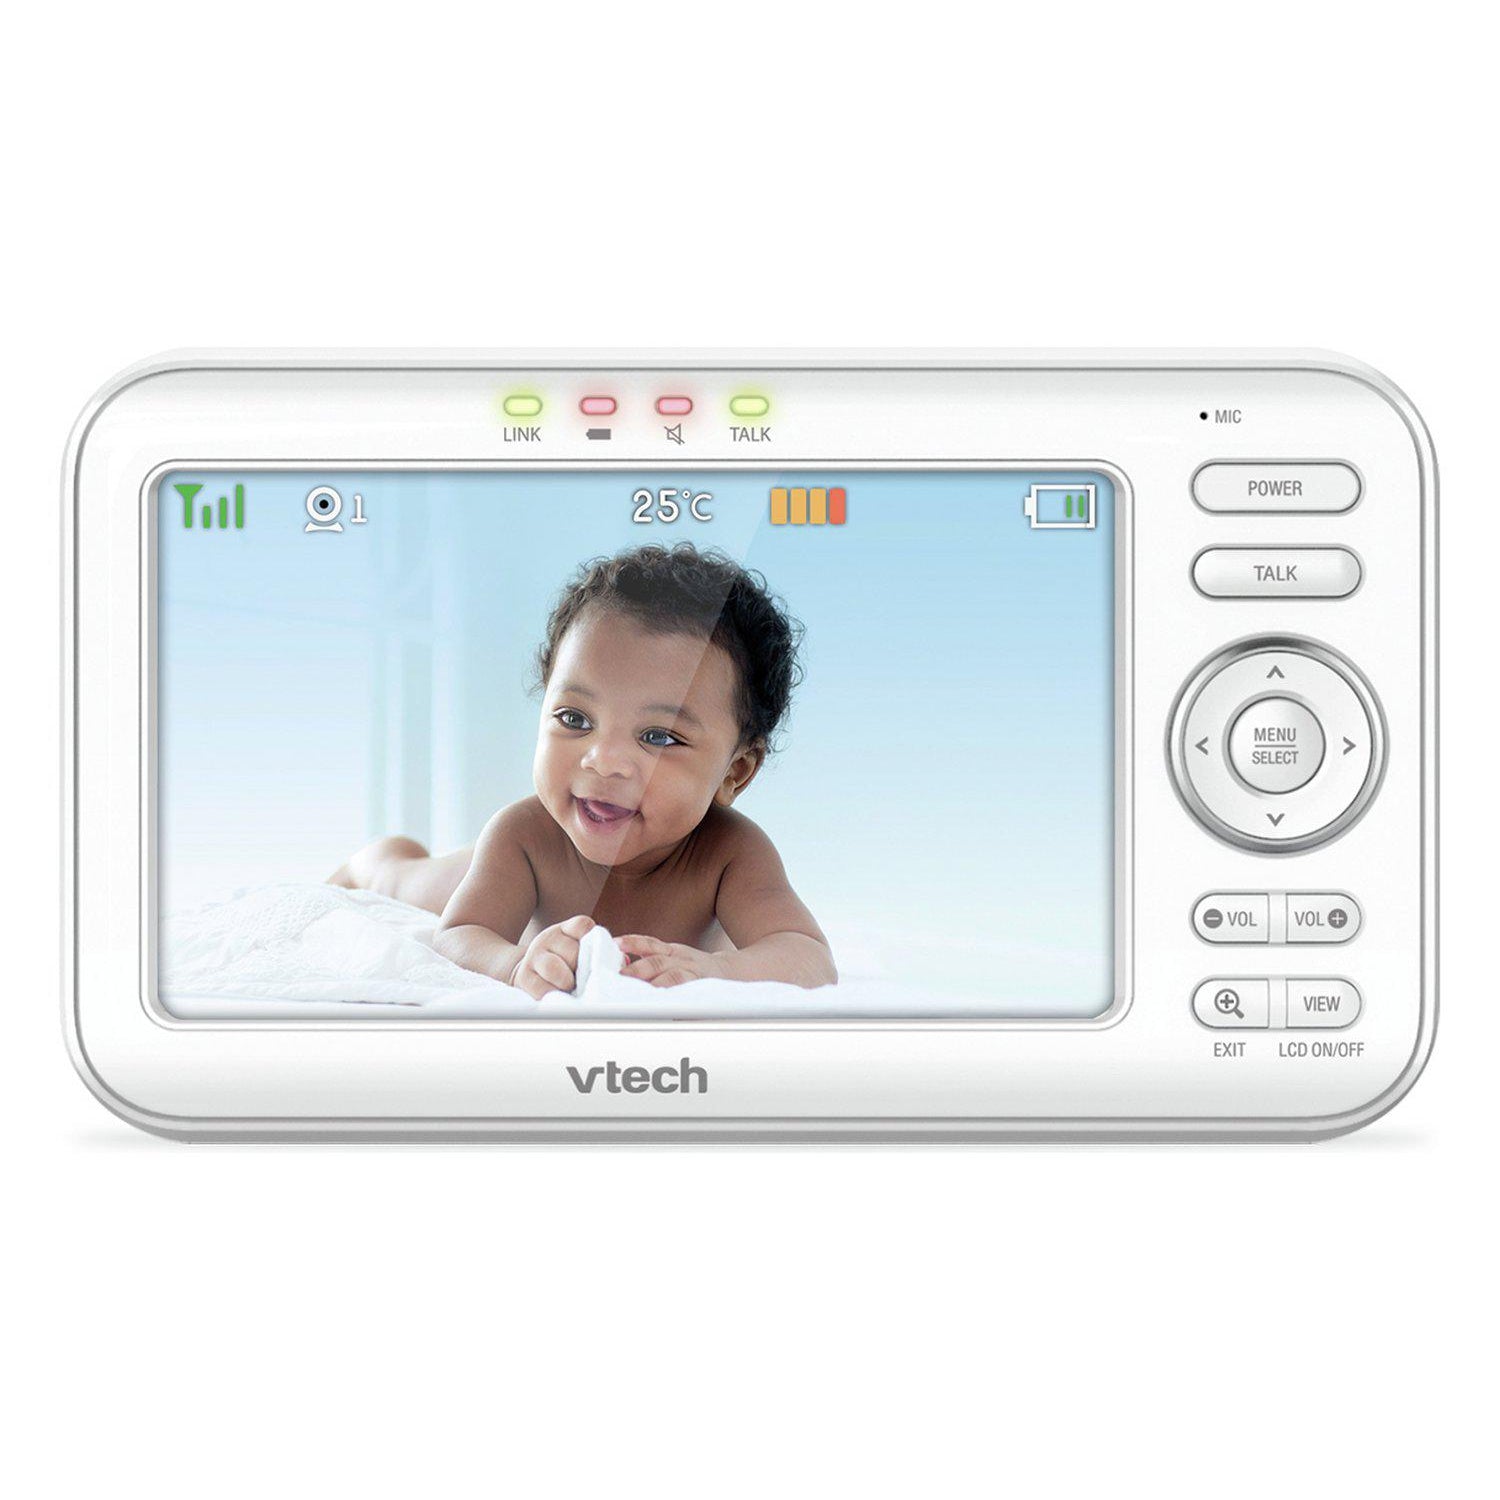 VTech VM5463 Digital Baby Pan & Tilt Monitor - White - Refurbished Excellent